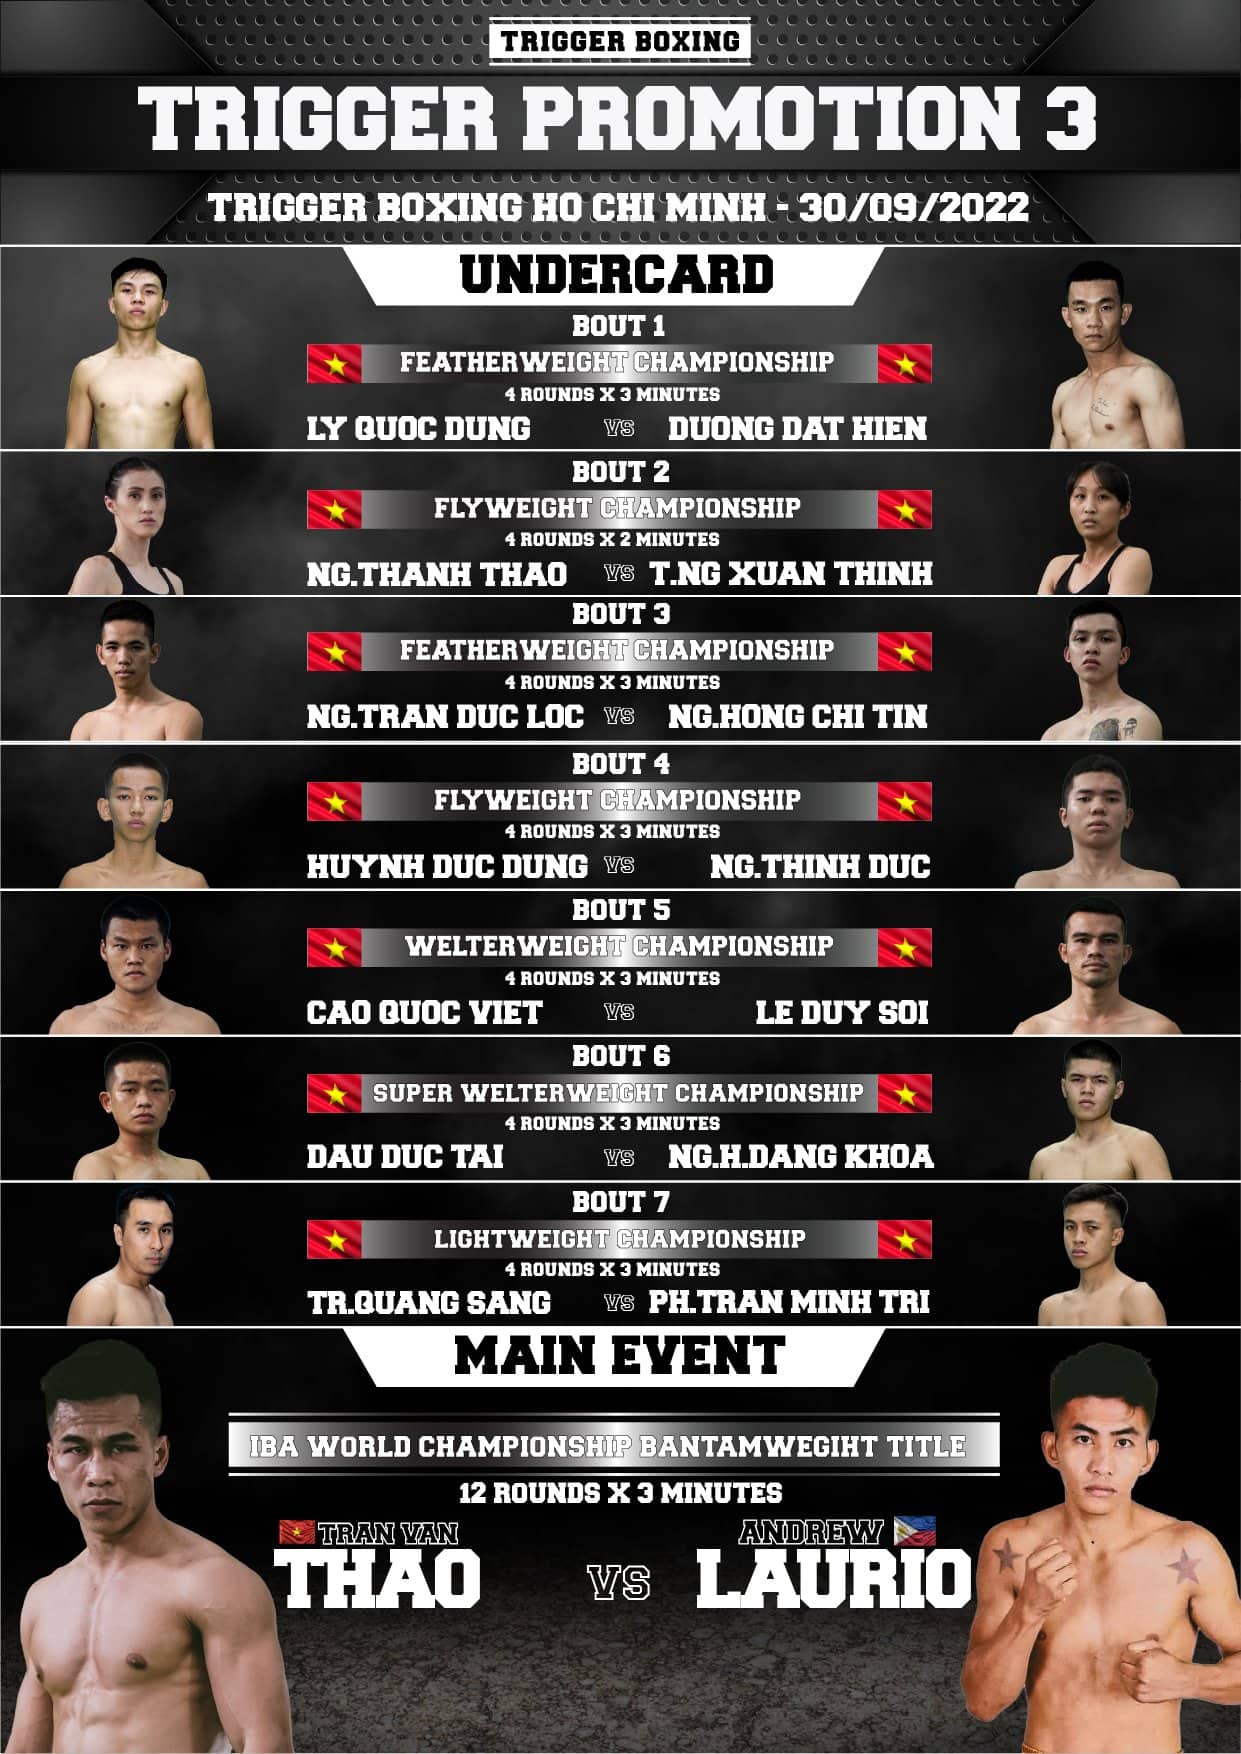 Lịch thi đấu, fight card Boxing IBA thế giới Trần Văn Thảo vs Andrew Laurio - Ảnh 1